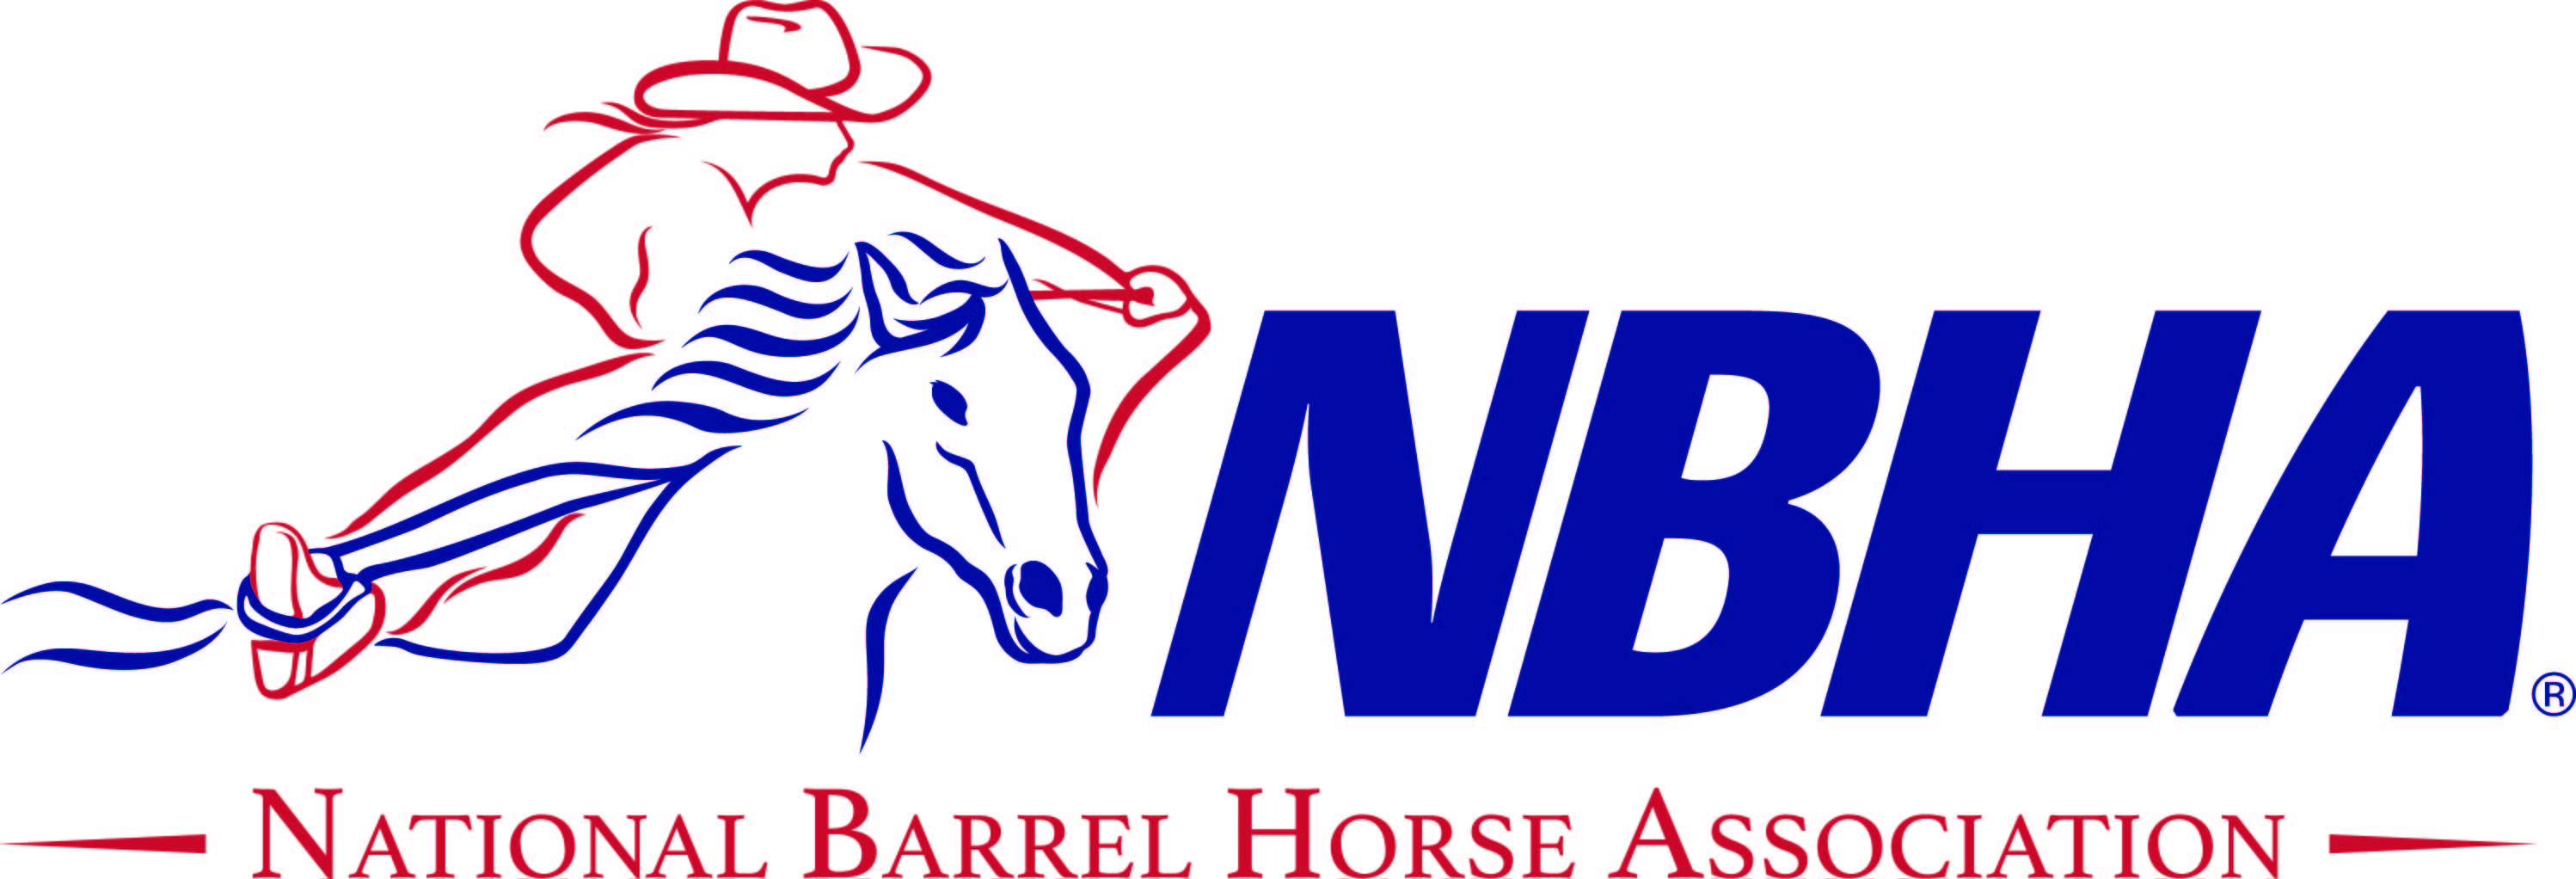 Brand Guidelines National Barrel Horse Association